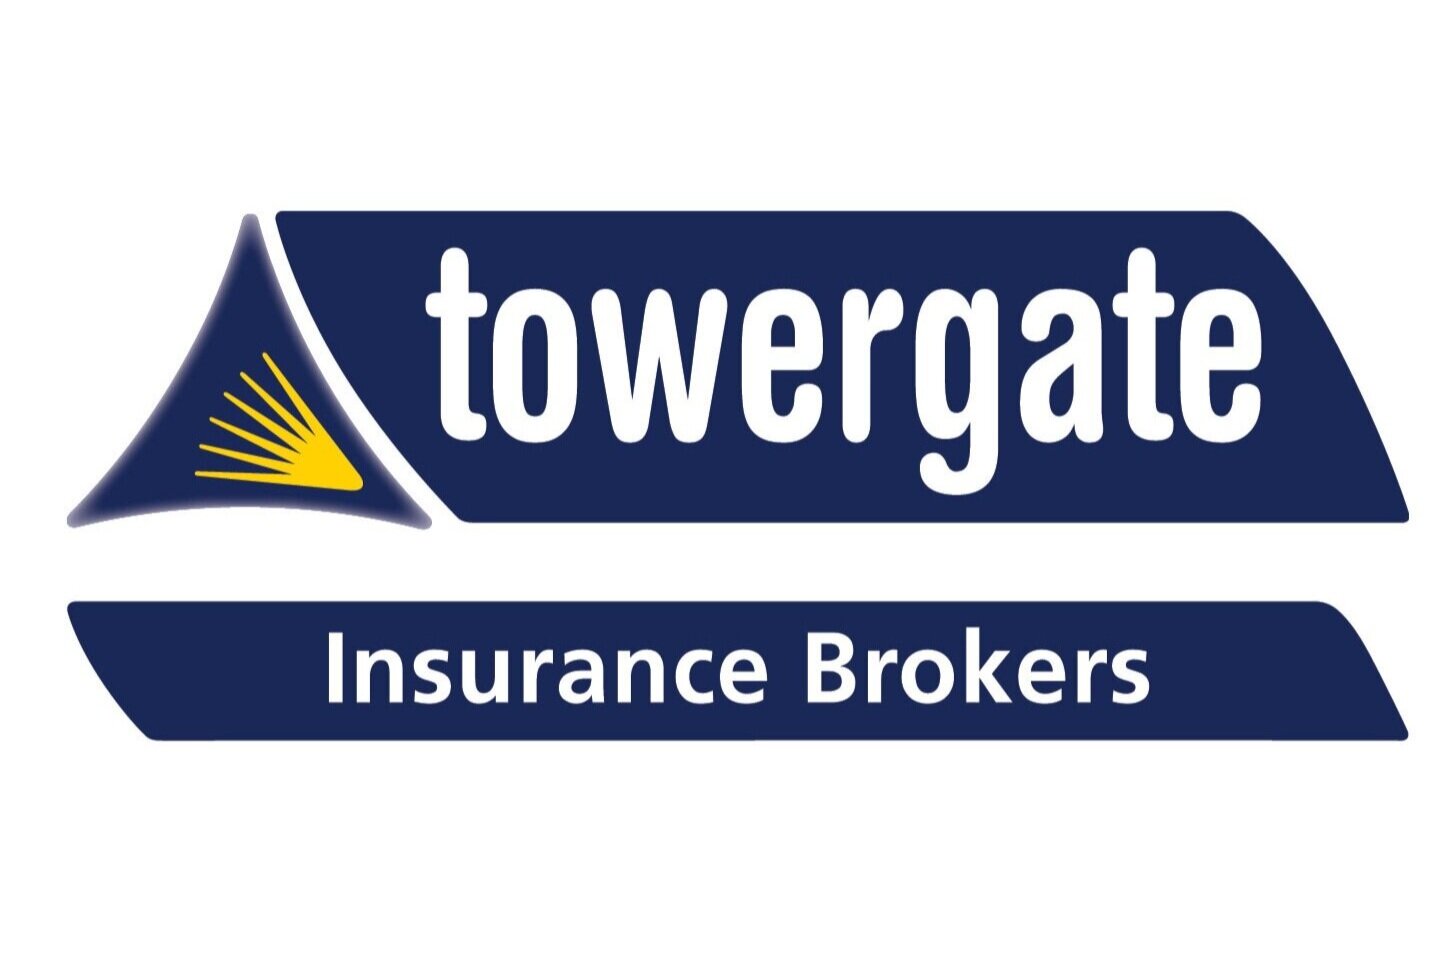 Towergate Insurance Brokers.jpg